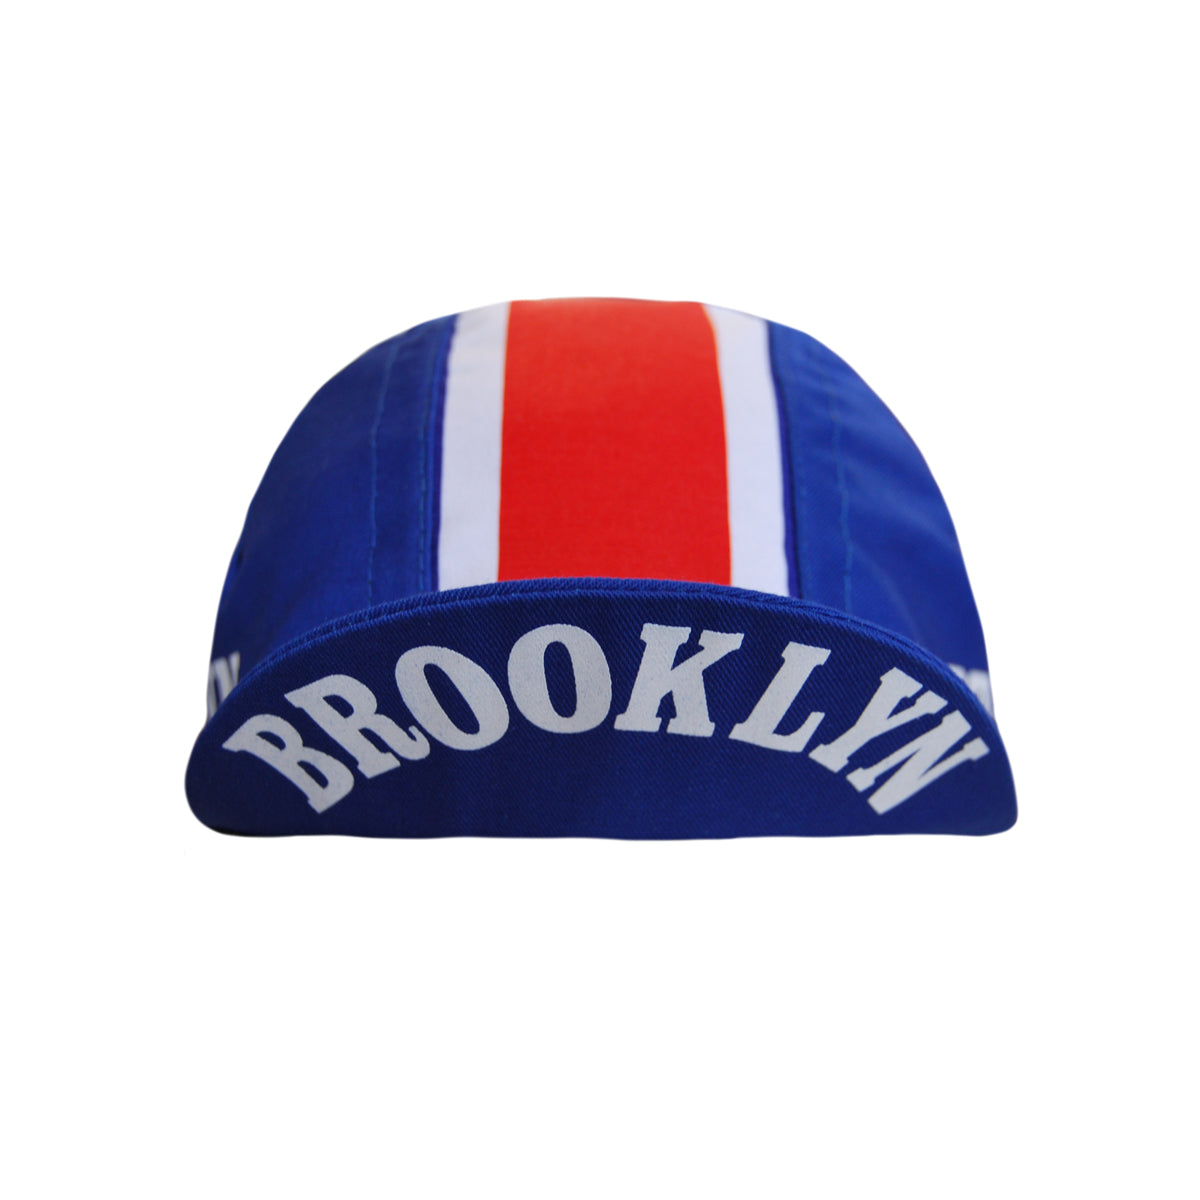 Brooklyn Cycling Cap in Denim by Headdy